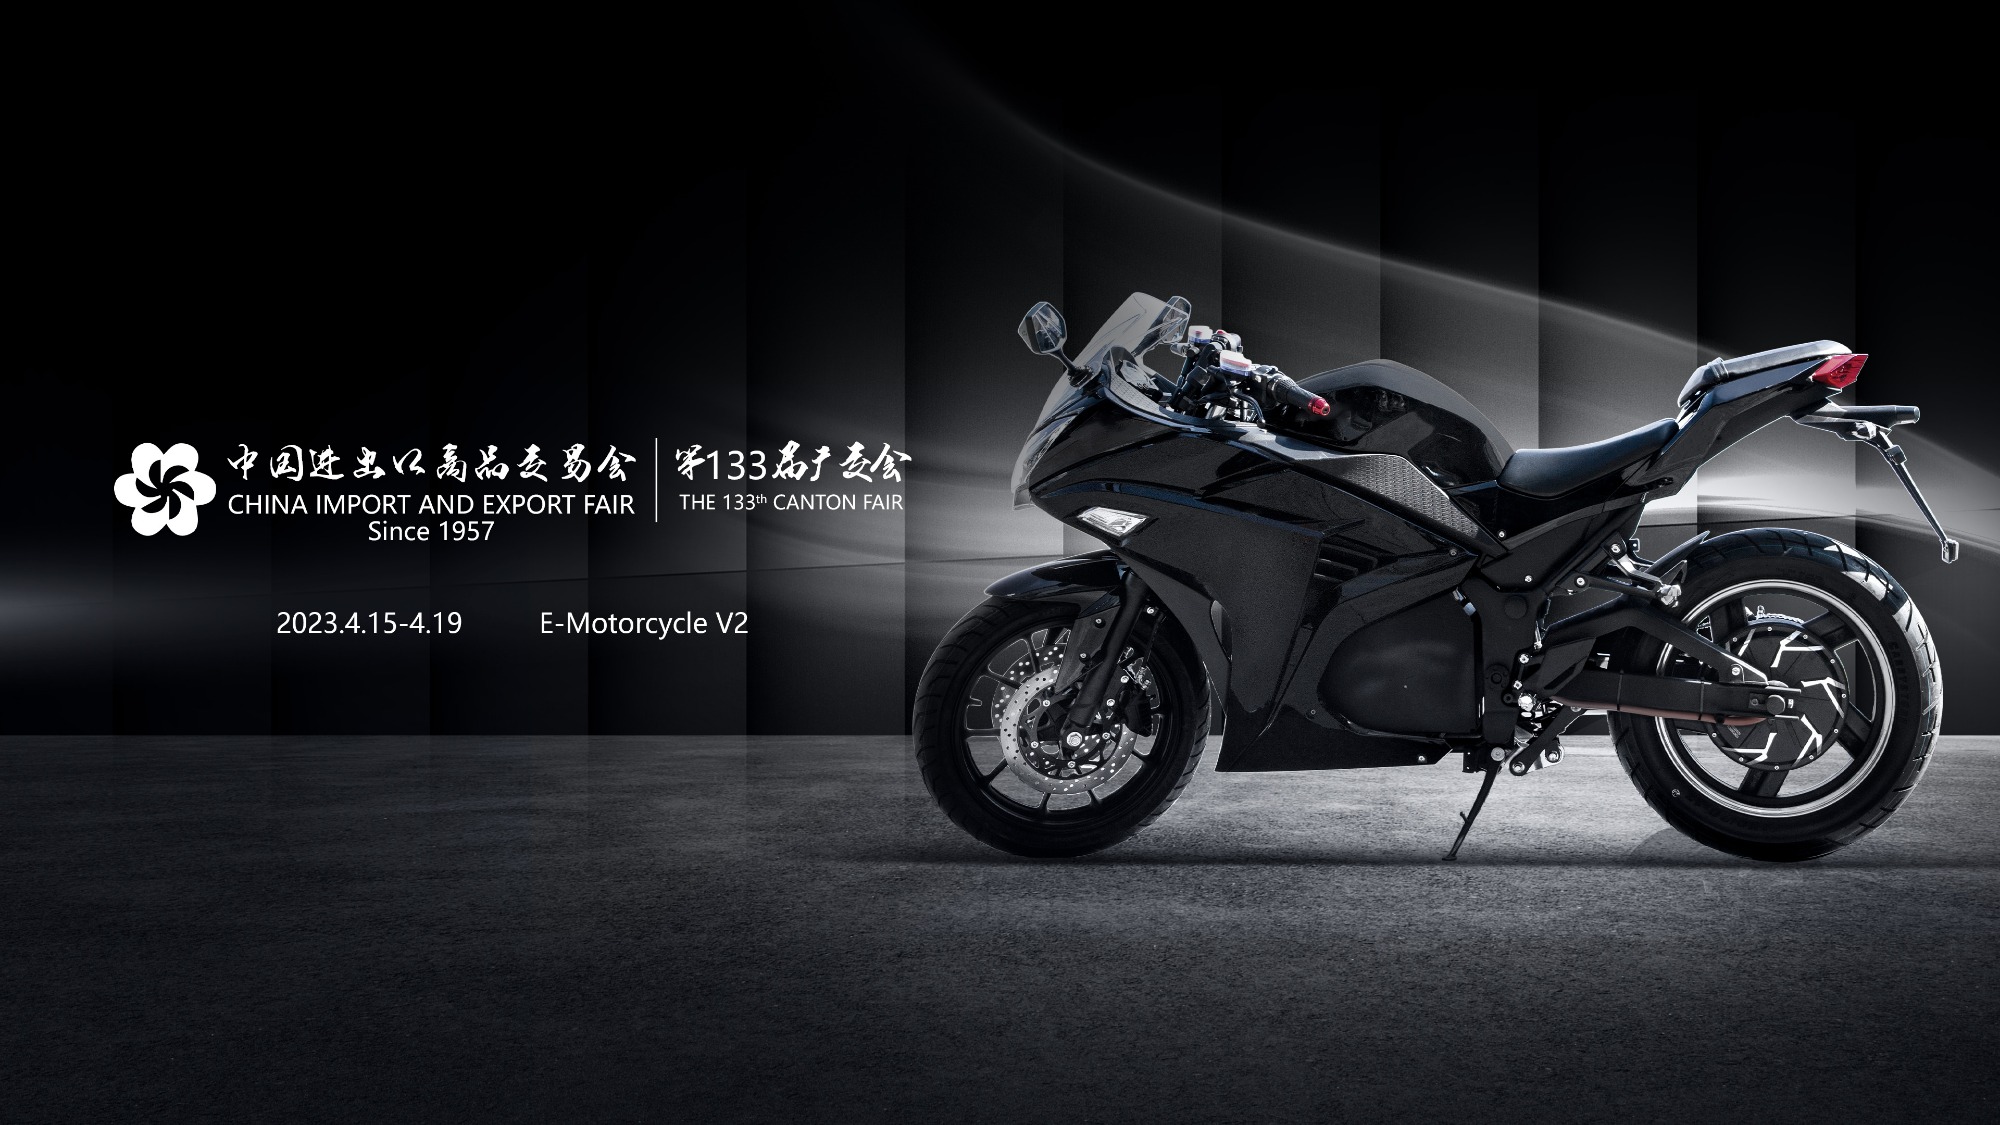 La nouvelle moto électrique V2 sera présentée demain sur le site de la 133e édition de cantonair.